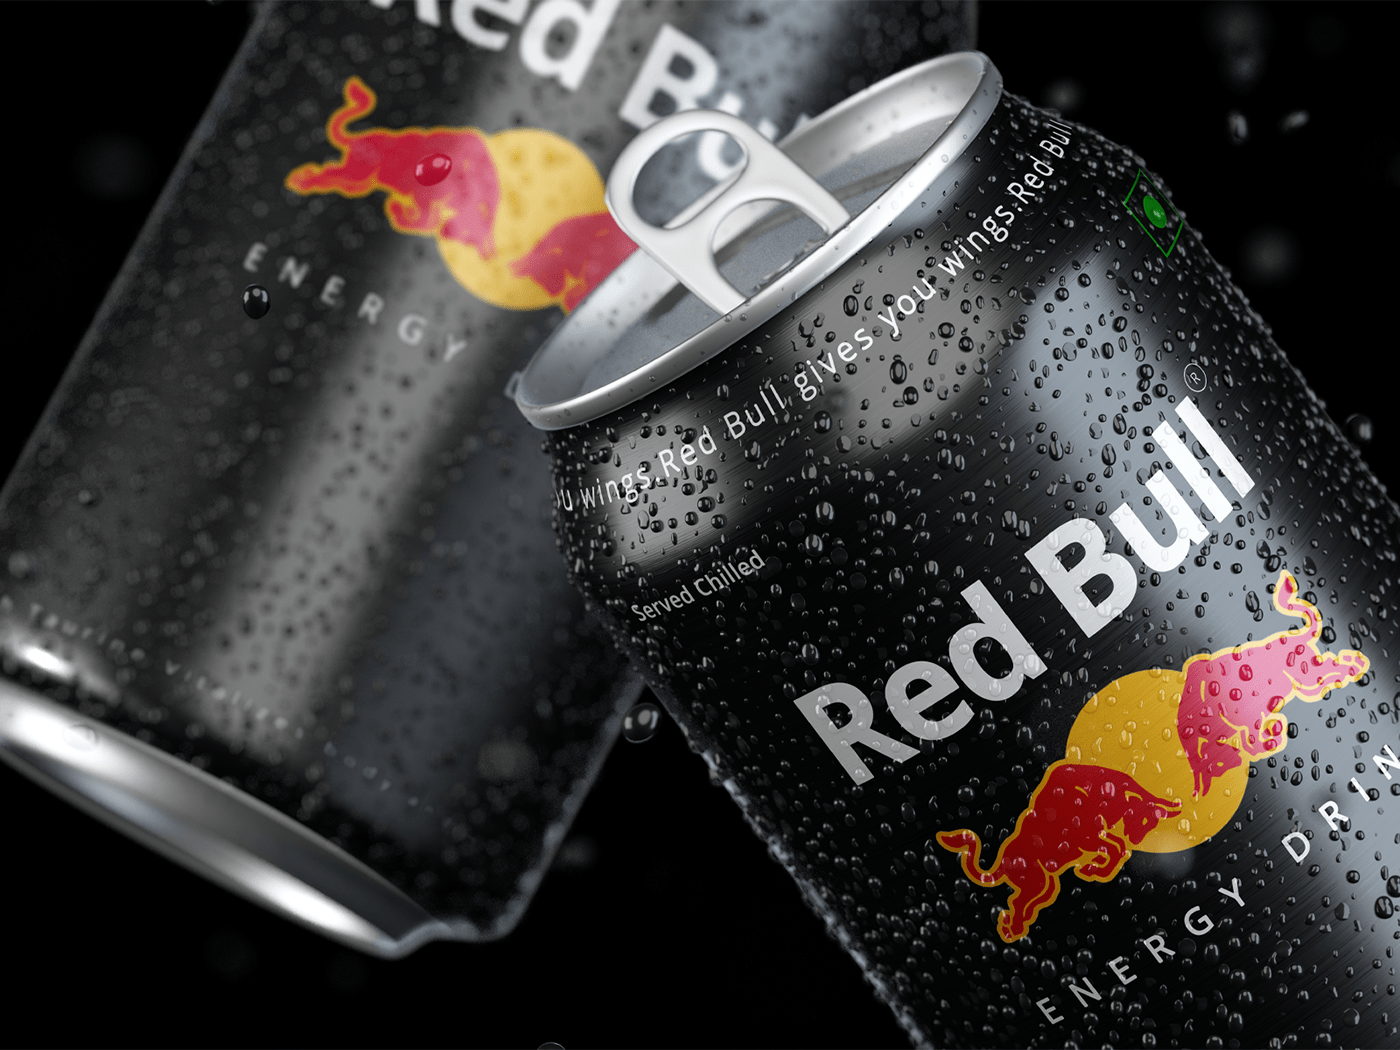 Energy Drink packaging packaging design RedBull redbull drink Redbull Packaging